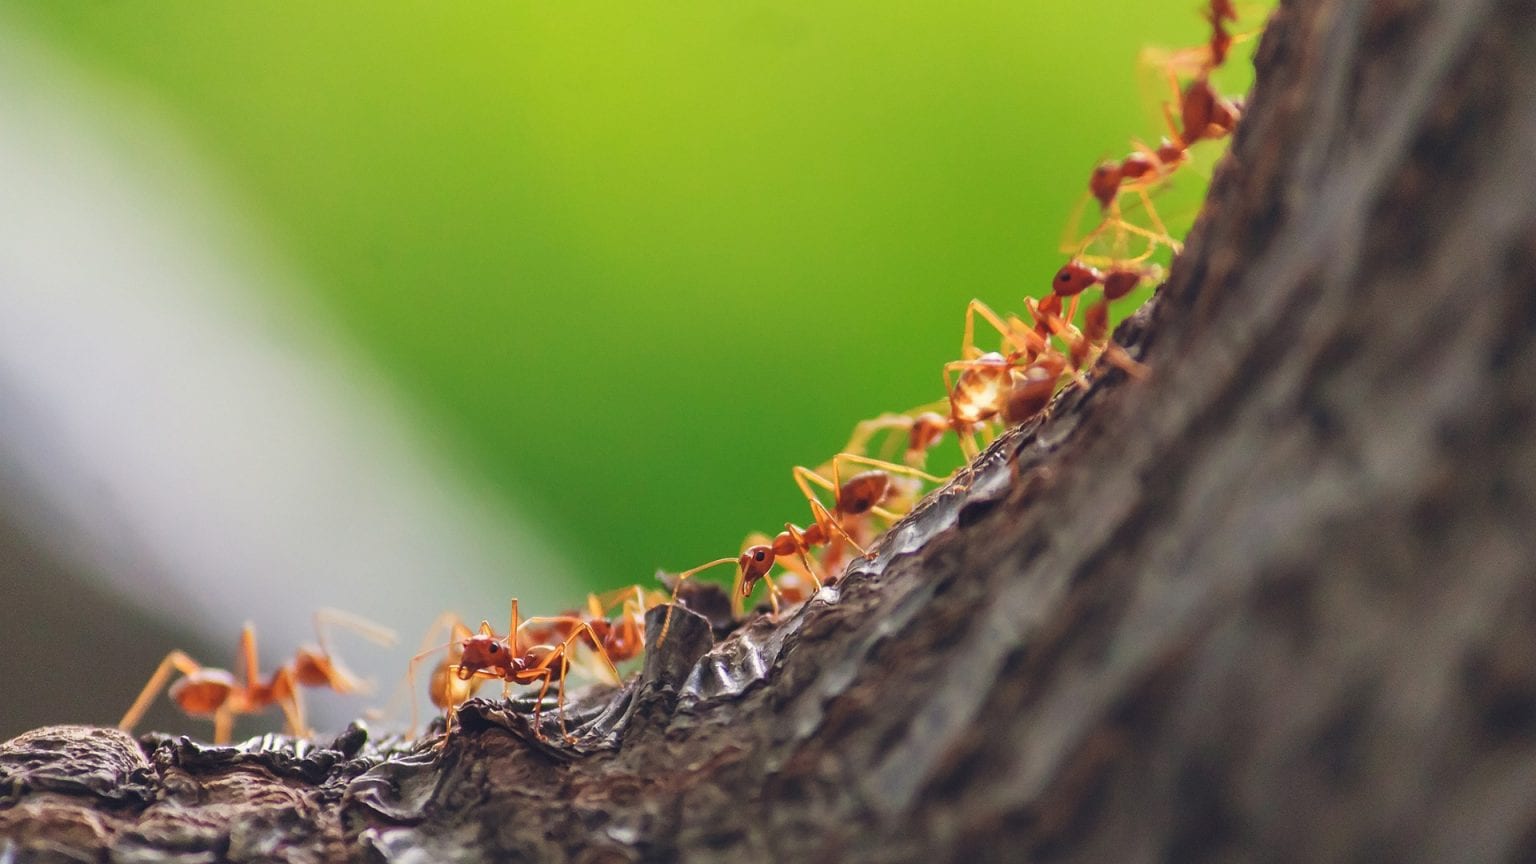 Ameisen am Baum - Welcher Schaden droht und was können Sie unternehmen?